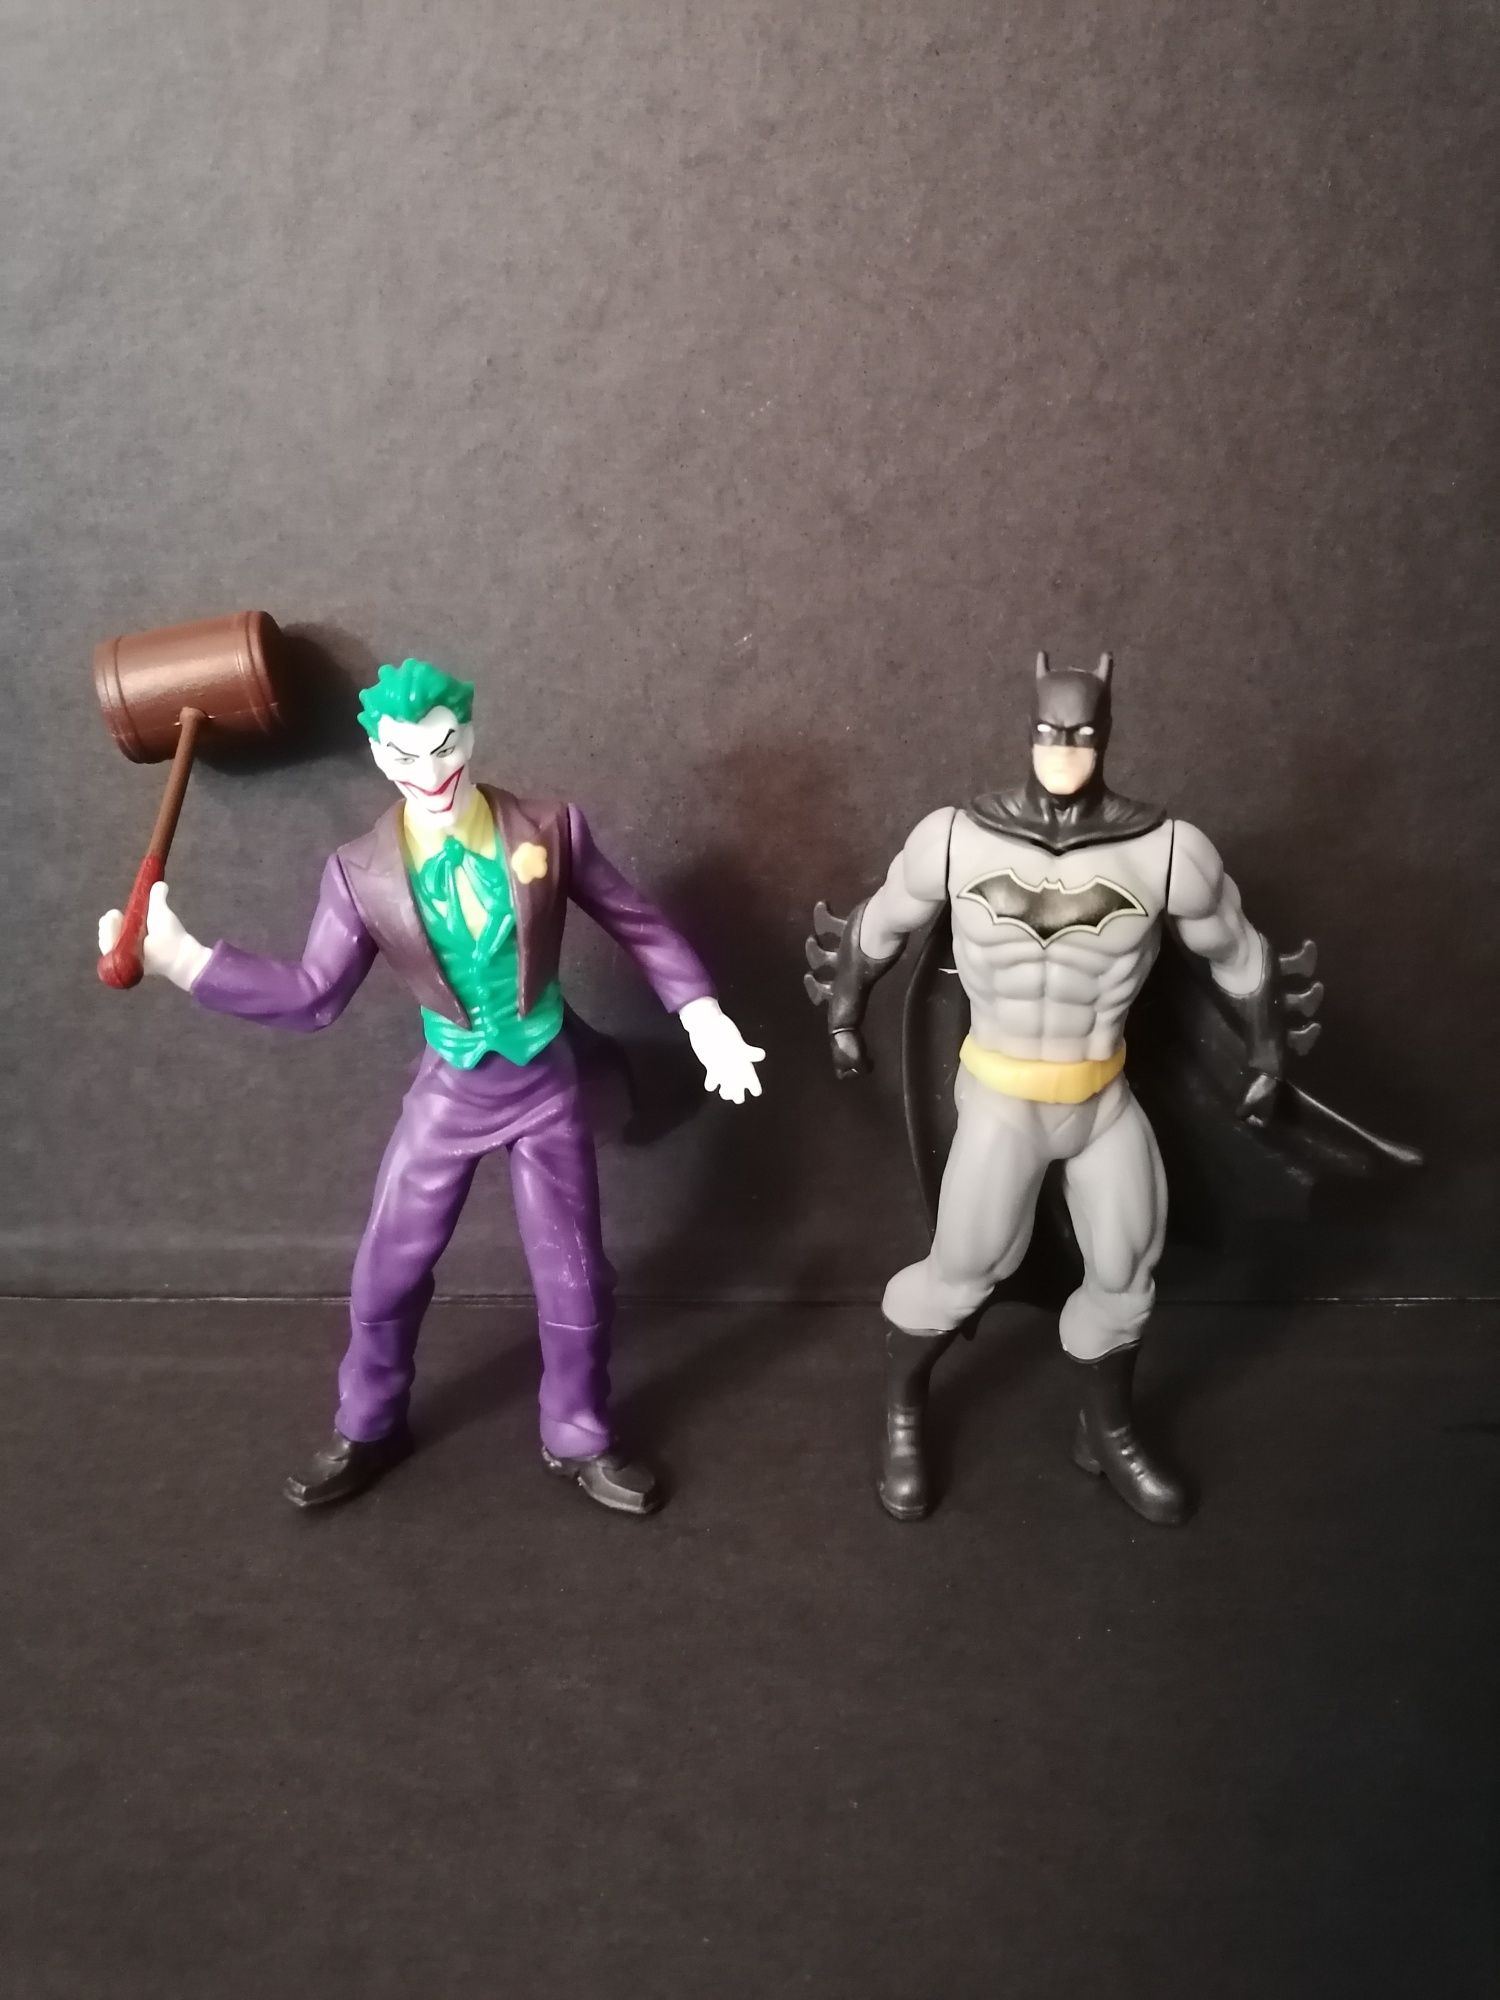 Conjunto de 2 bonecos Batman e Joker
Altura 12 cm. 

Posso vender un